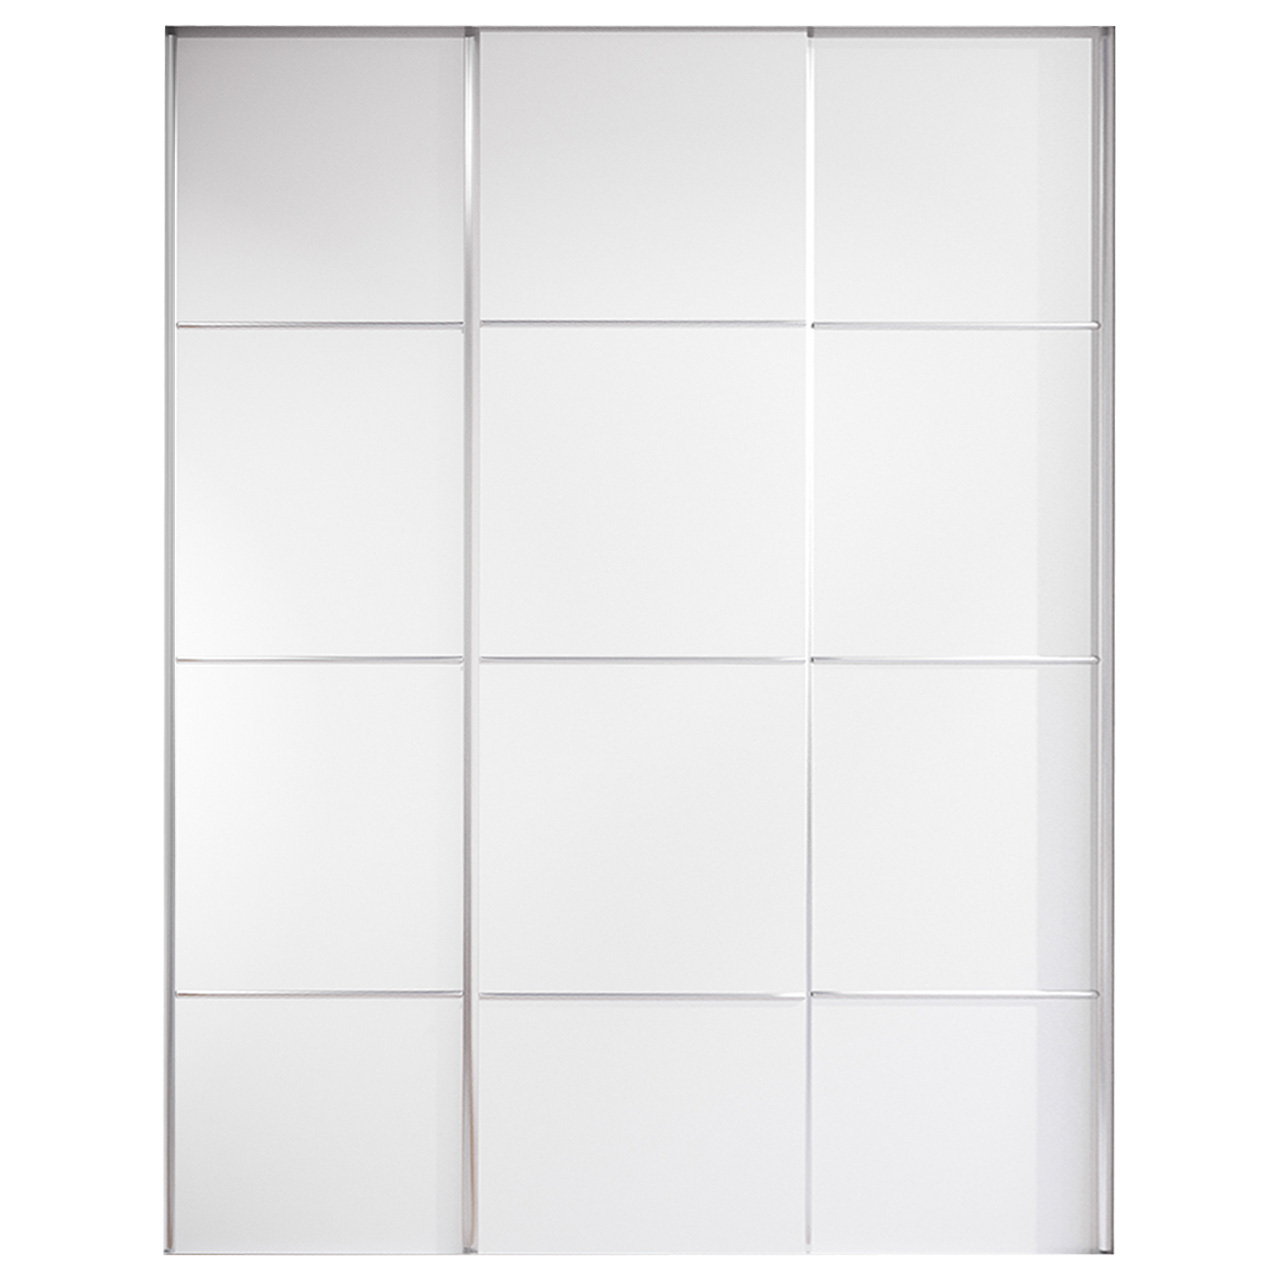 Sliding door for wardrobe MERV F3 150 white